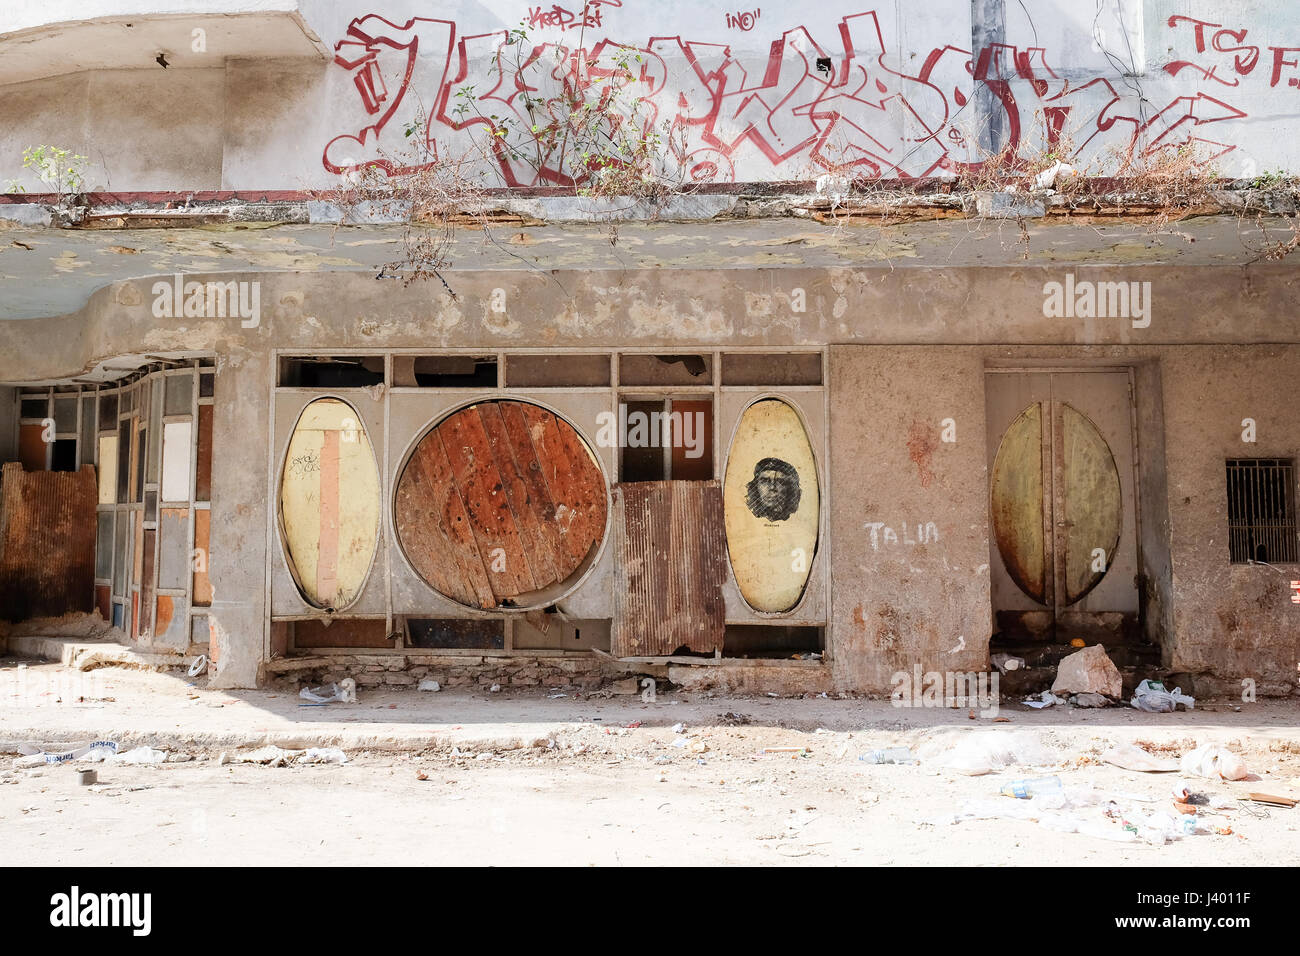 Abandoned building with murals in Havana, Cuba Stock Photo